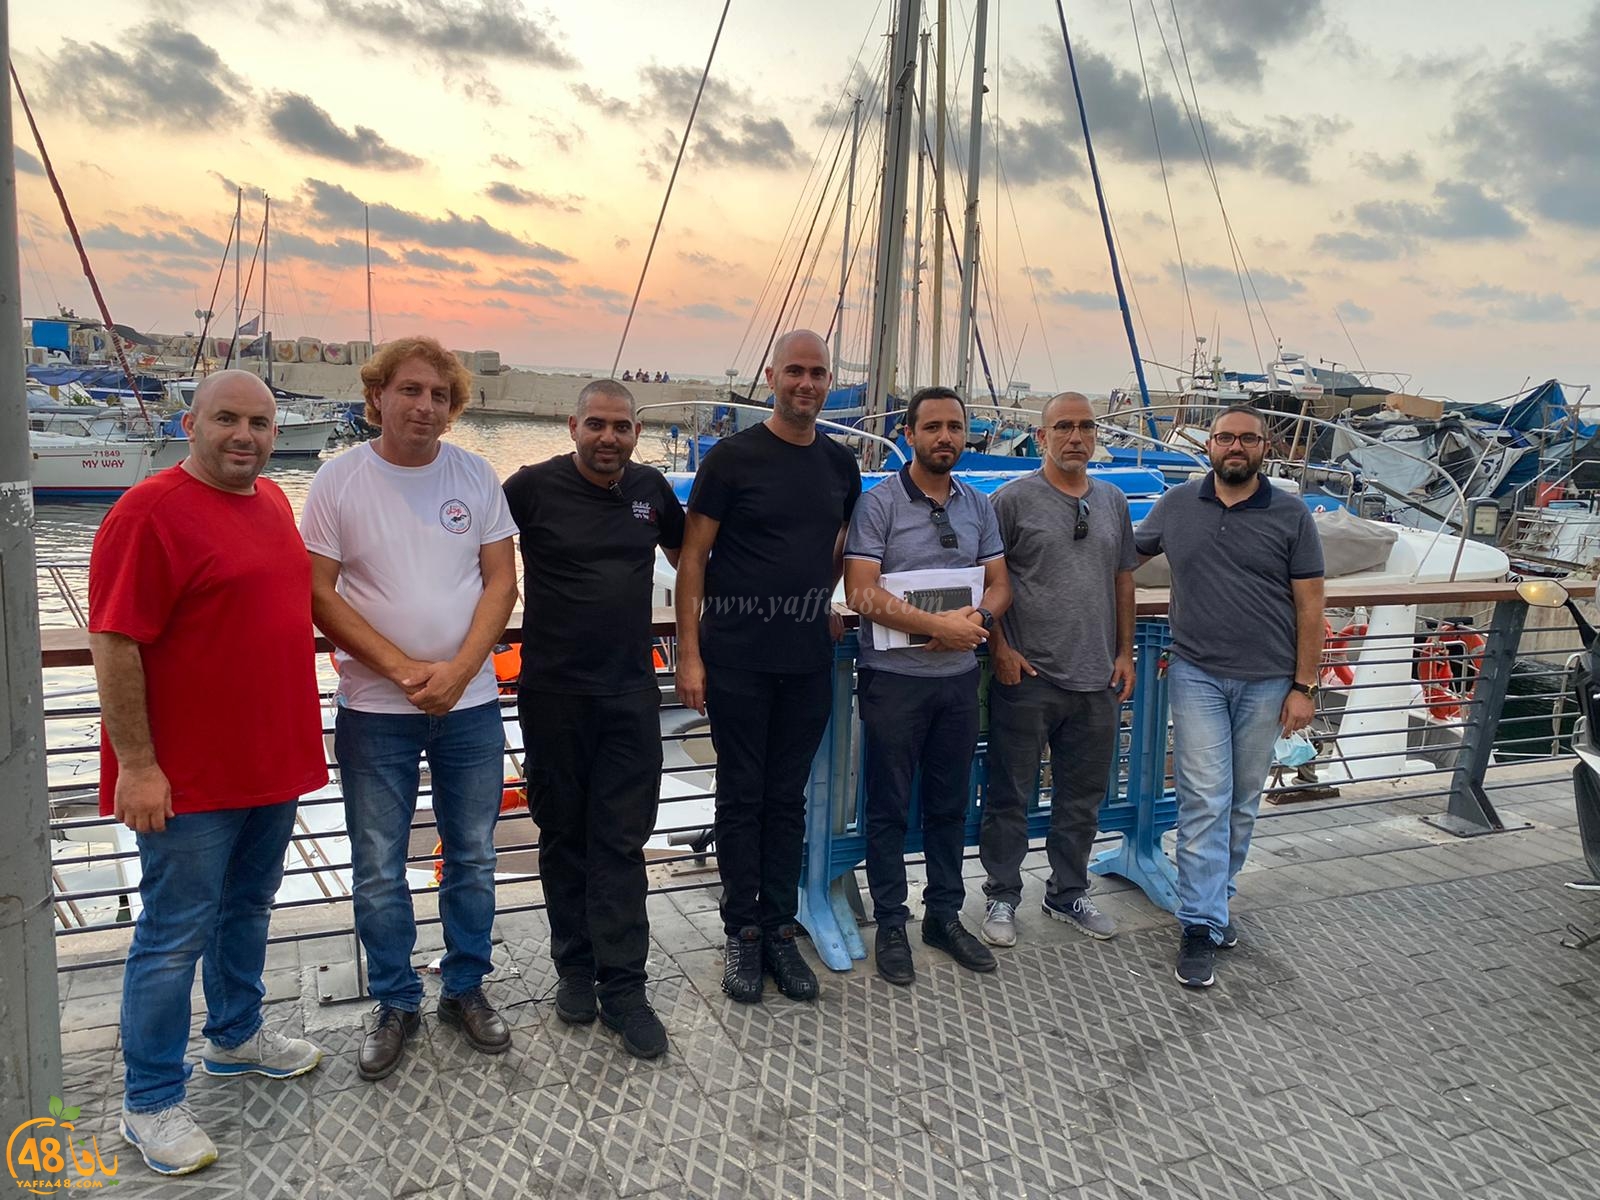 بعد تعاظم حالات الغرق - تشكيل لجنة للانقاذ البحري على شواطئ يافا